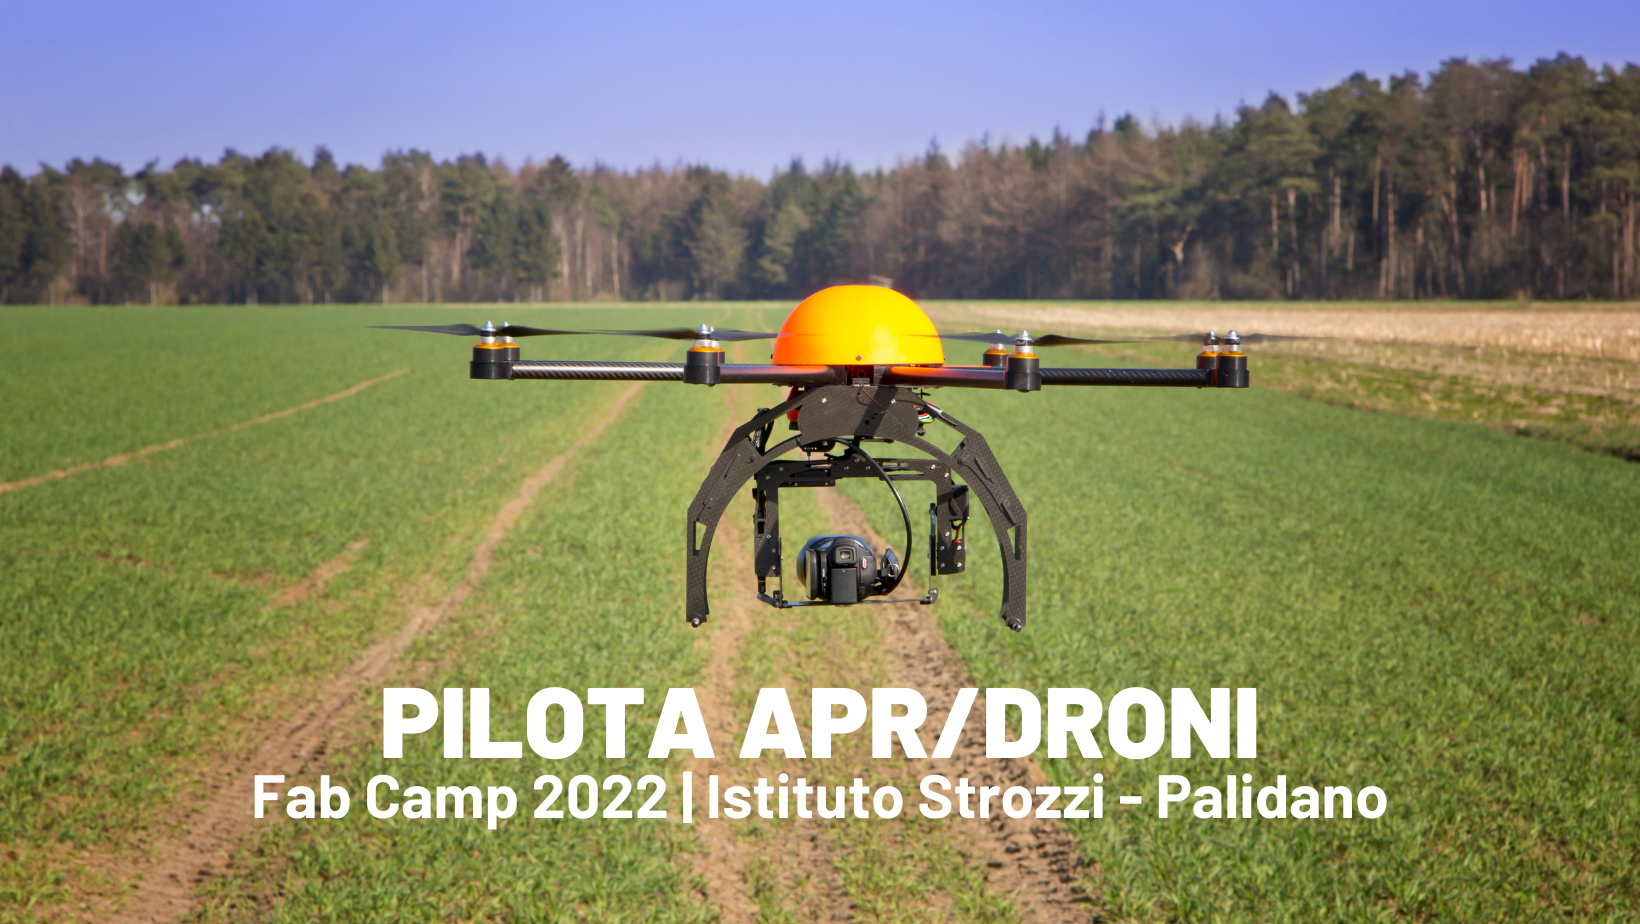 Pilota APR/DRONI – FAB CAMP 2022 all’Istituto Strozzi di Palidano